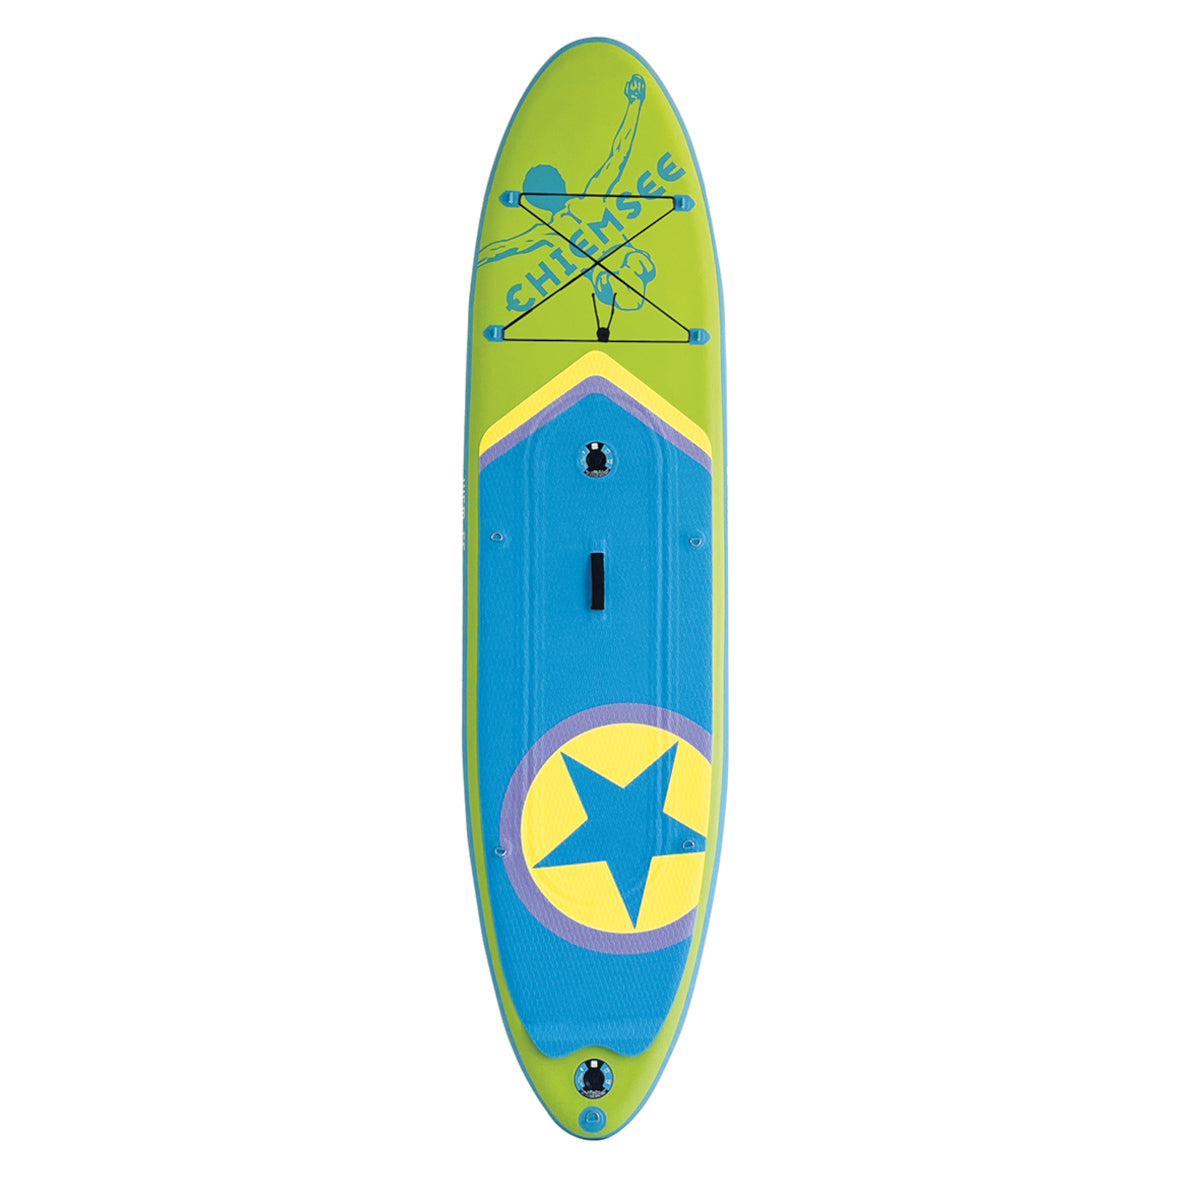 Chiemsee SUP-Set inkl. Board, Paddel, Pumpe, Leash & Rucksack (grün/blau)